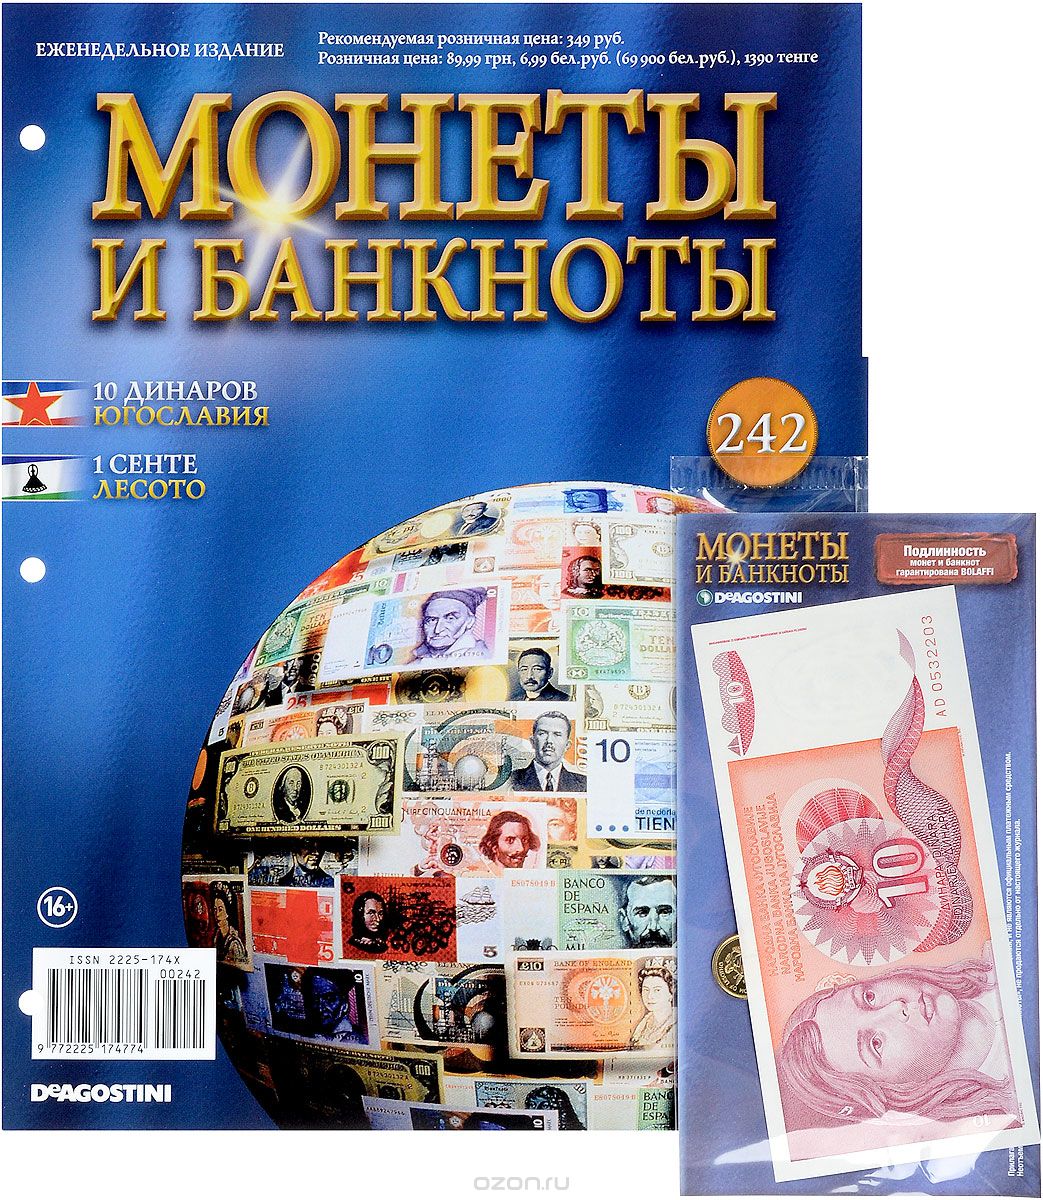 Скачать книгу "Журнал "Монеты и банкноты" №242"